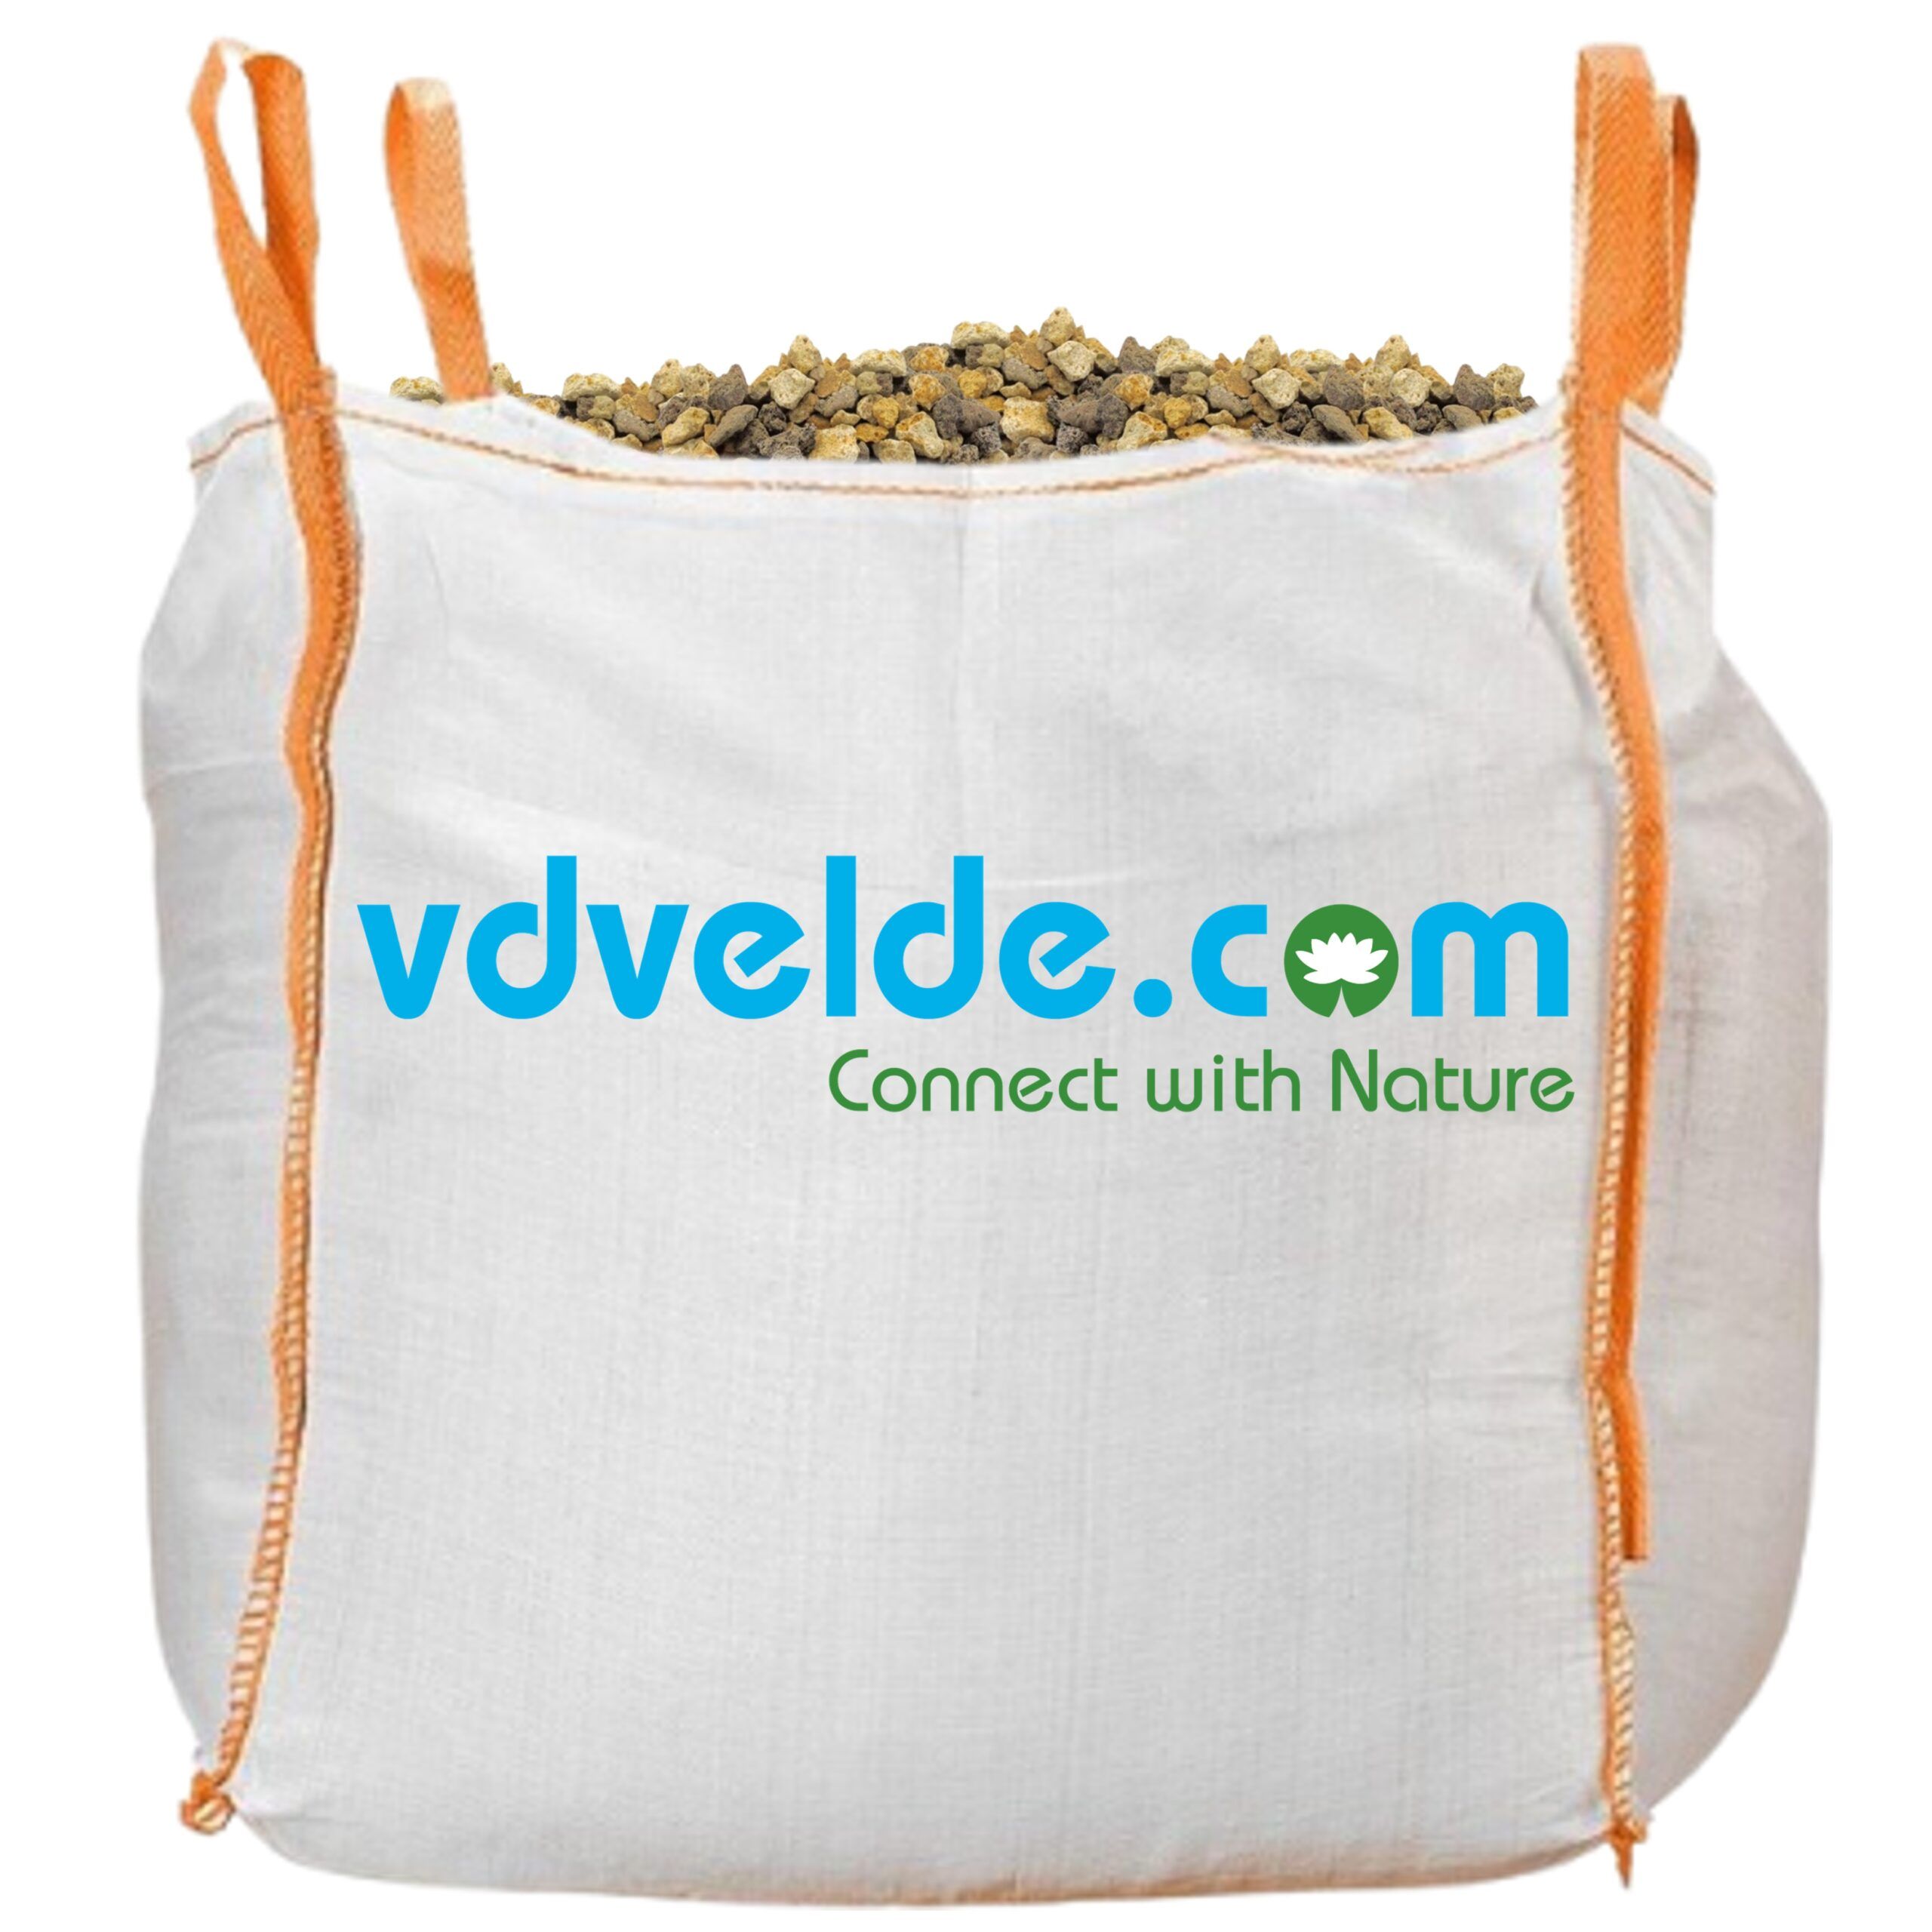 vdvelde.com - Vijversubstraat - Big Bag 1000 liter - Geleverd op Euro Pallet - Zware kwaliteit vijver substraat voor de beste filtering - Extra poreus: optimale planten groei